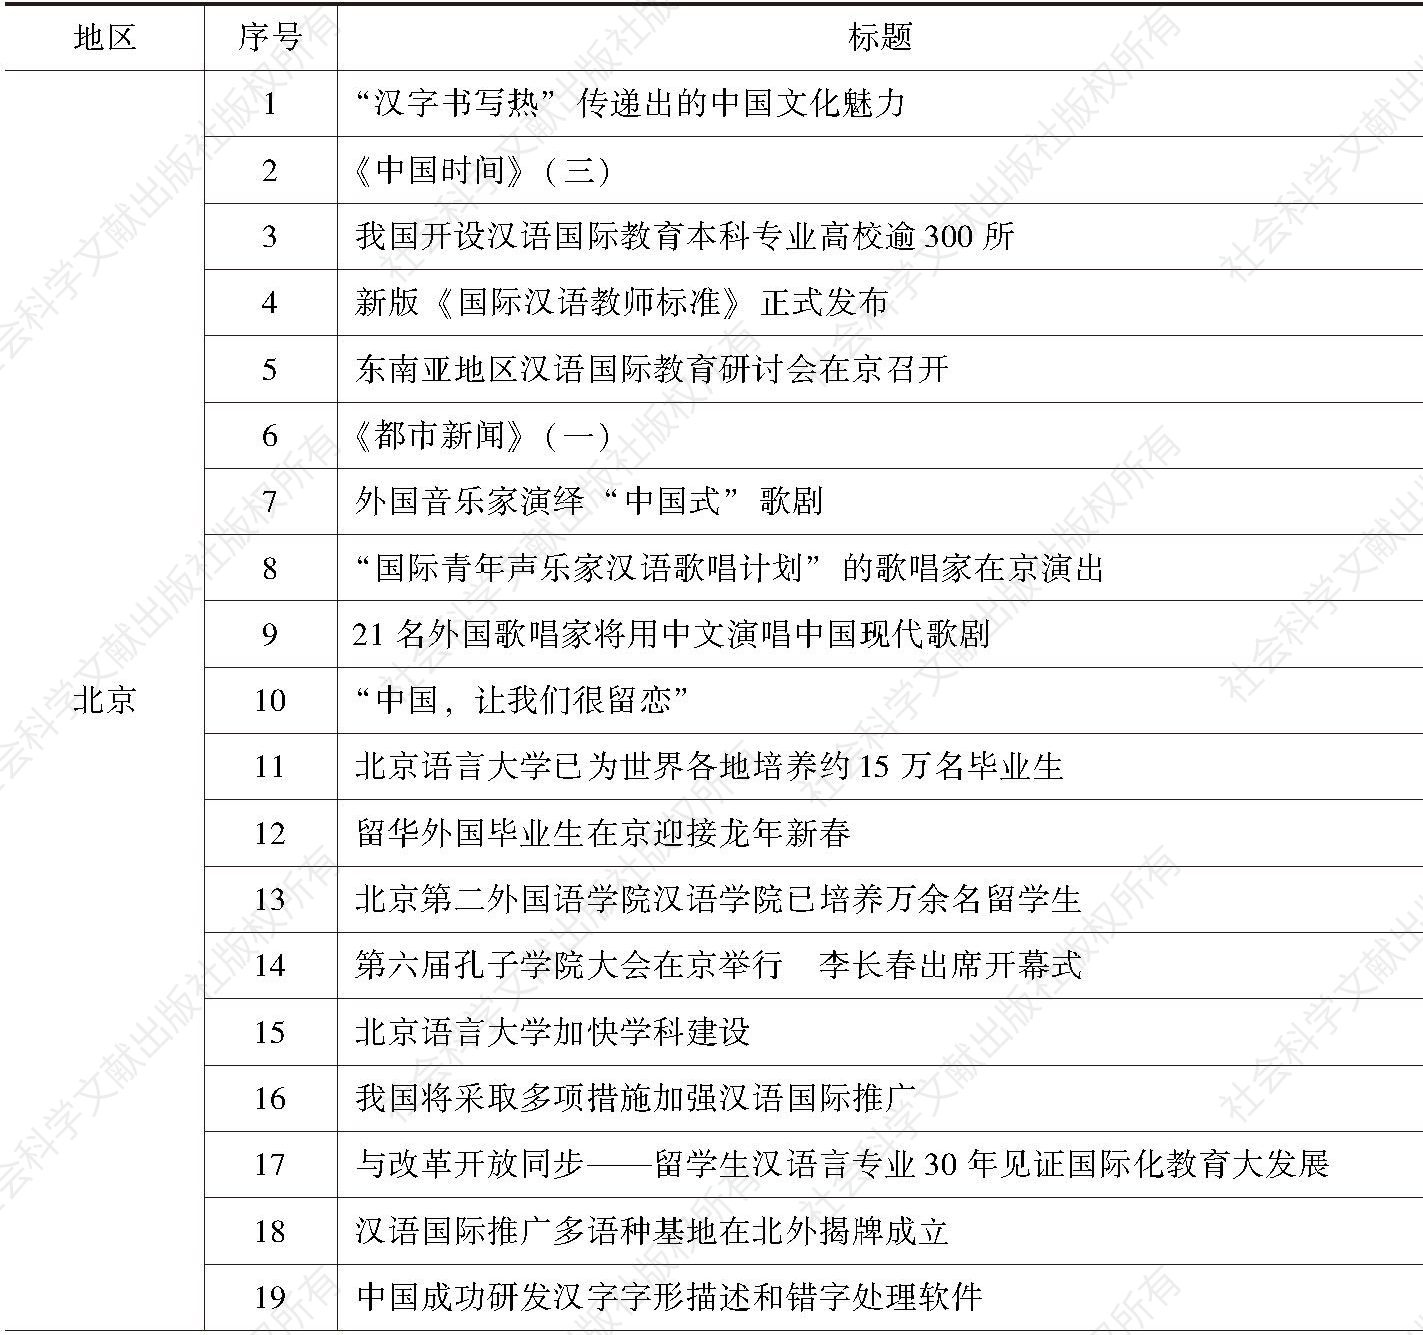 表1 各地区发布的与汉语国际教育有关的文字新闻